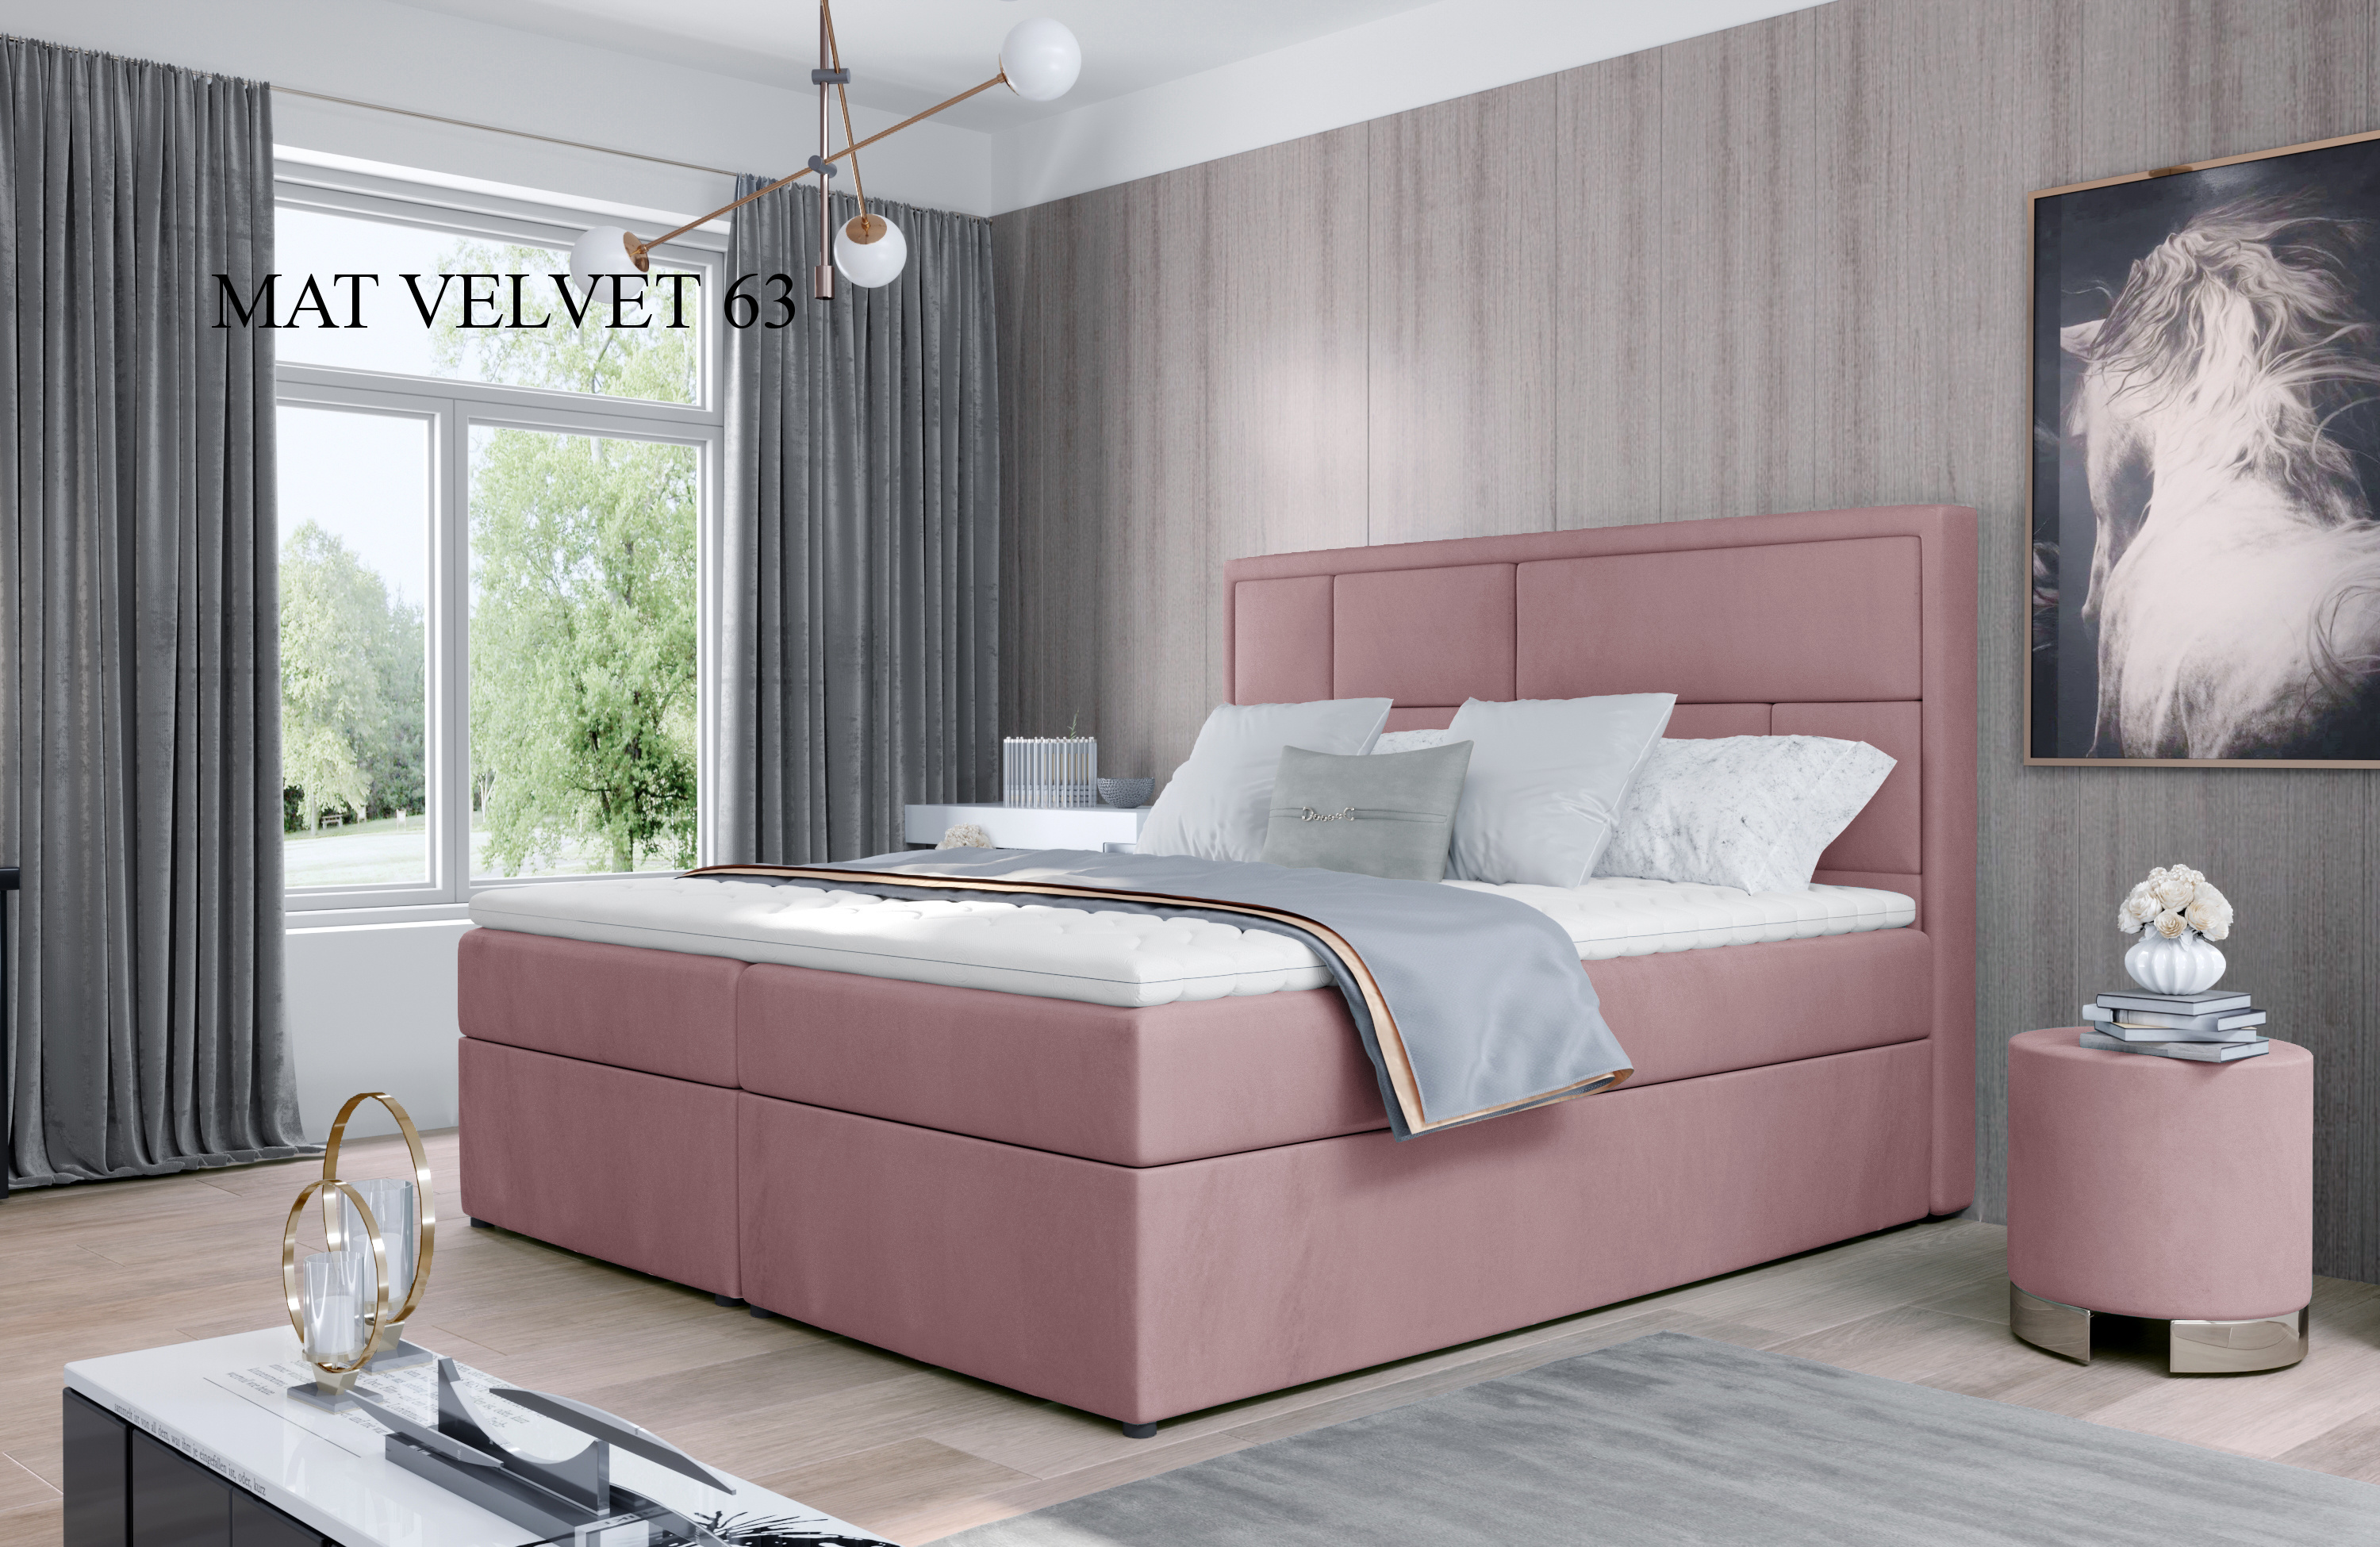 Čalouněná postel MERON Boxsprings 160 x 200 cm Provedení: Mat Velvet 63